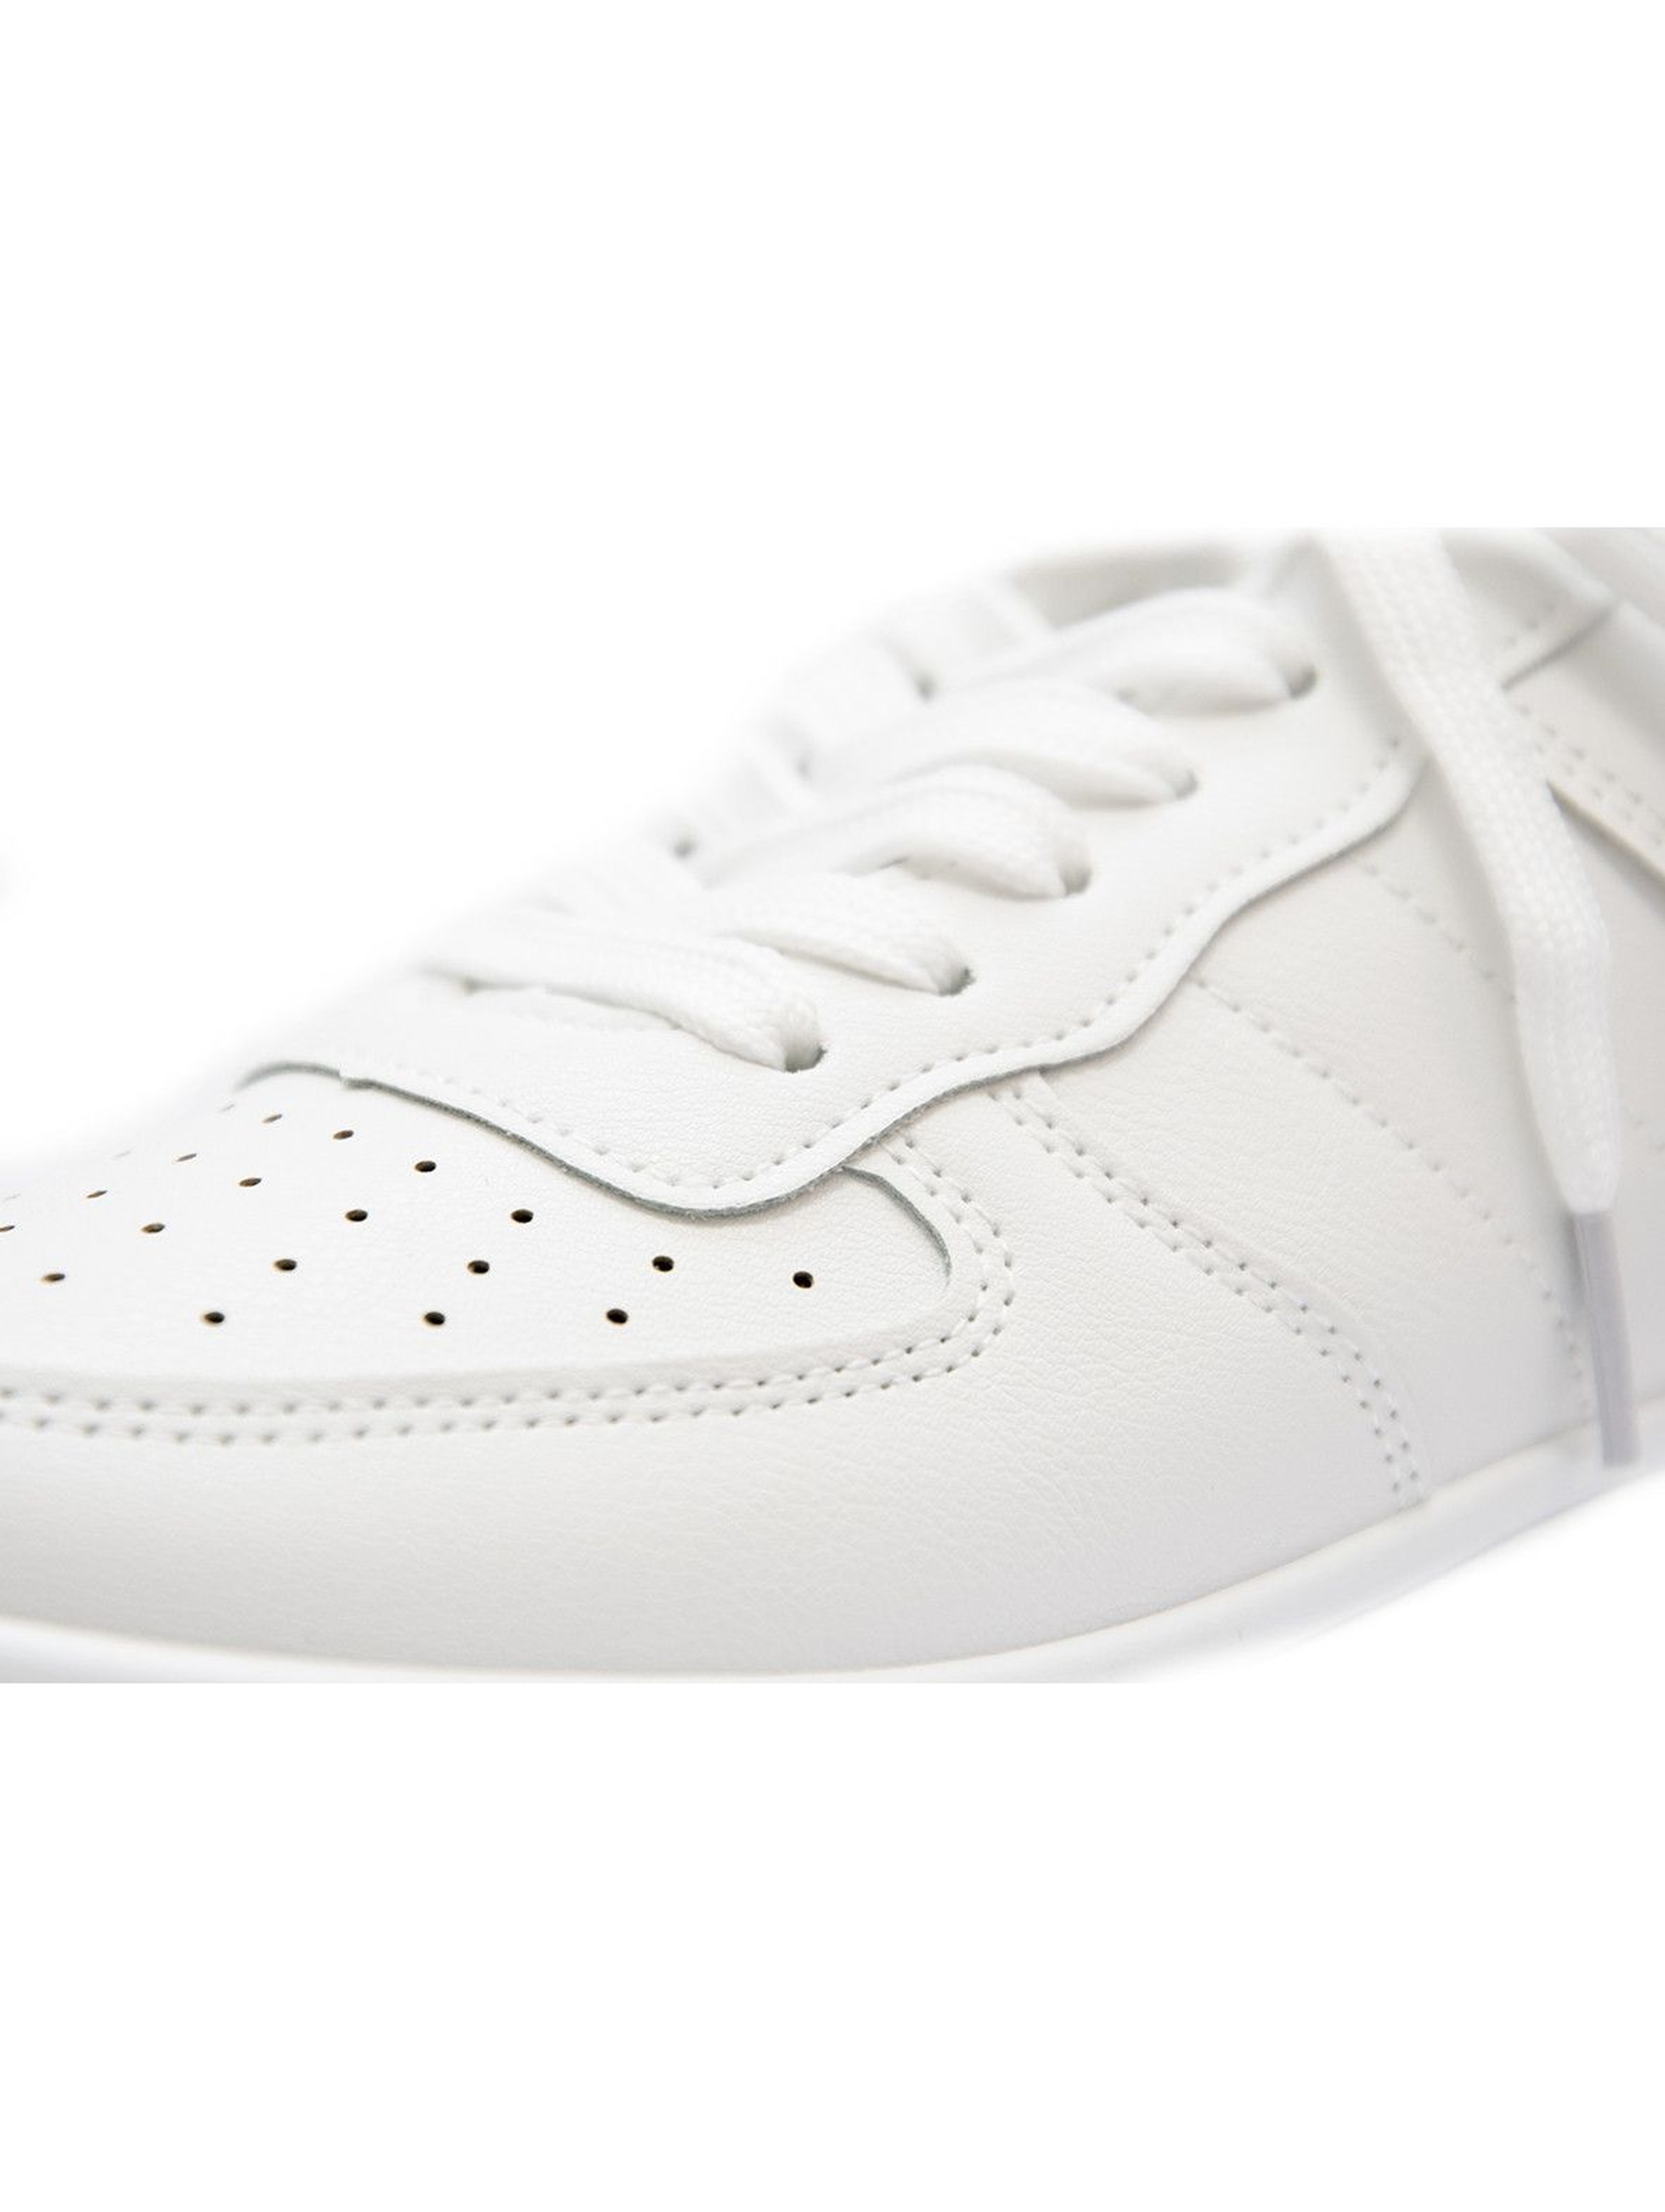 Buty sportowe damskie białe sznurowane